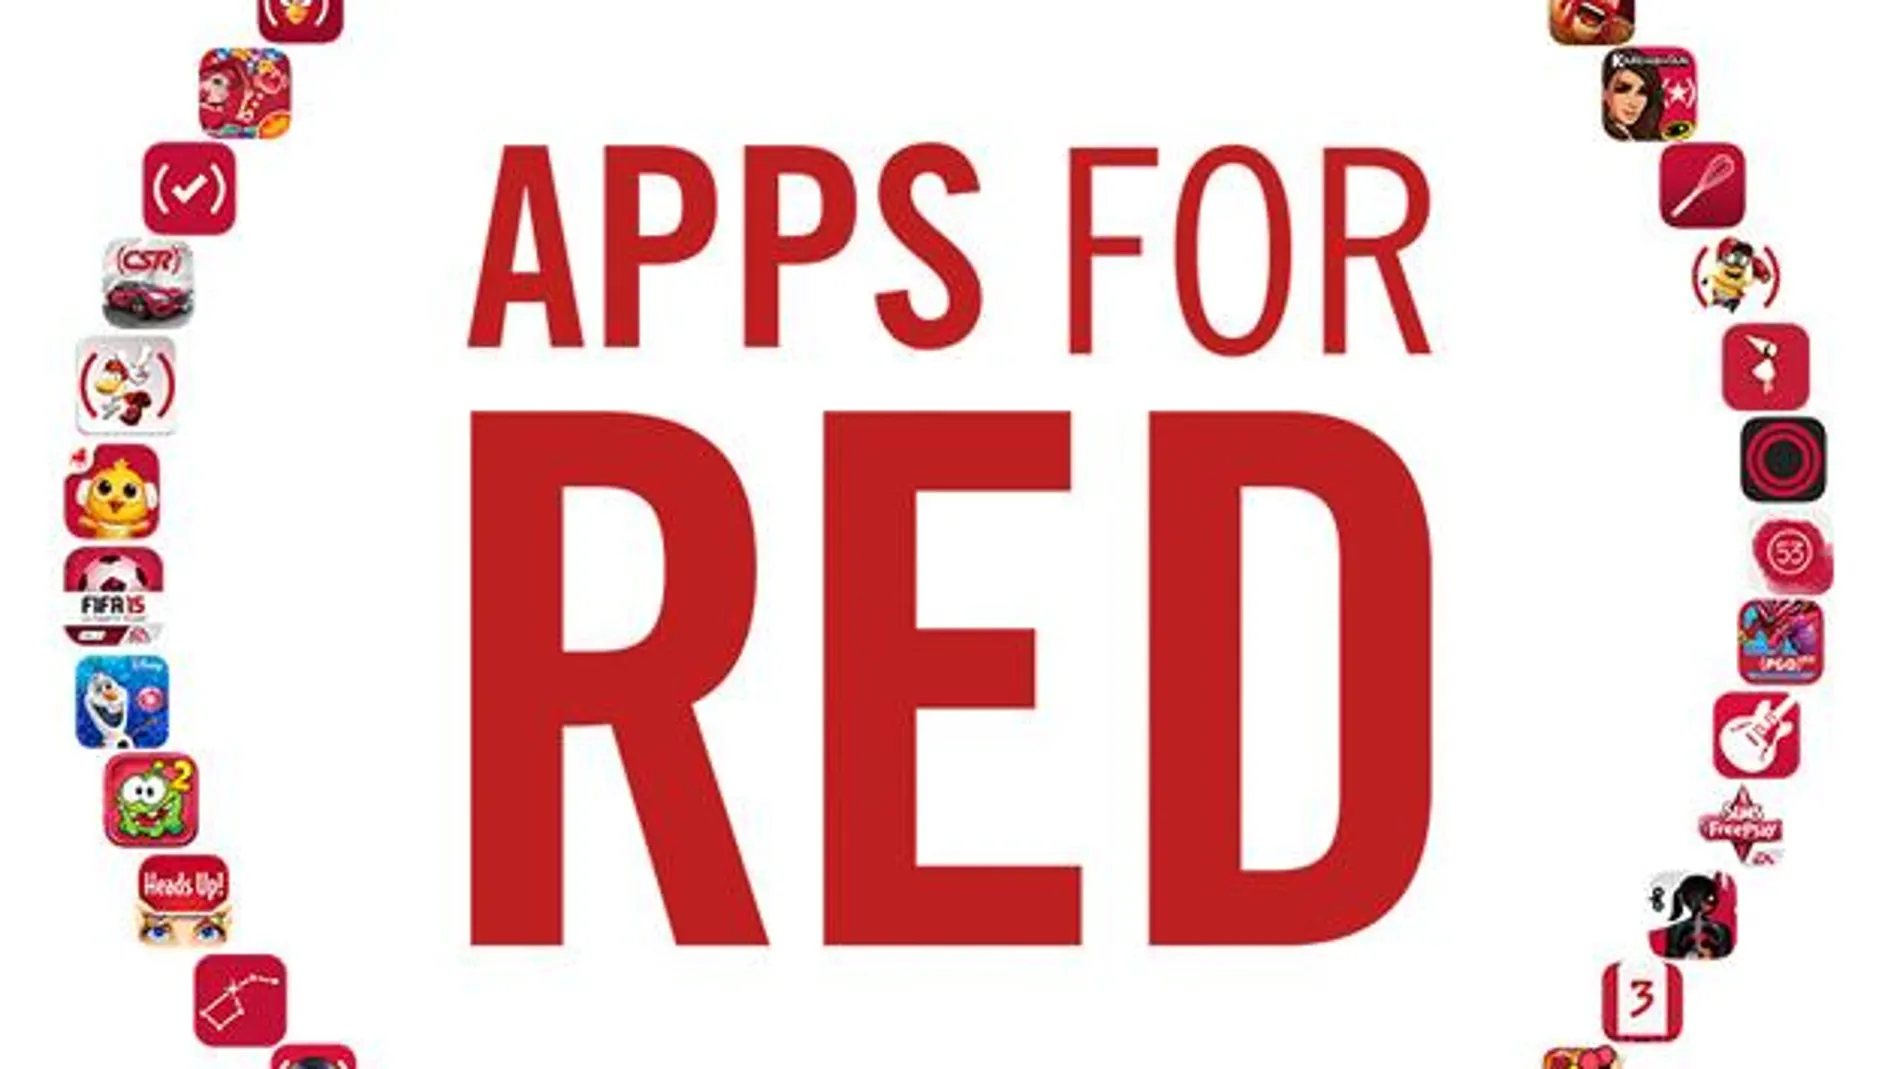 «Apps for RED», una iniciativa de Apple para recaudar fondos contra el SIDA